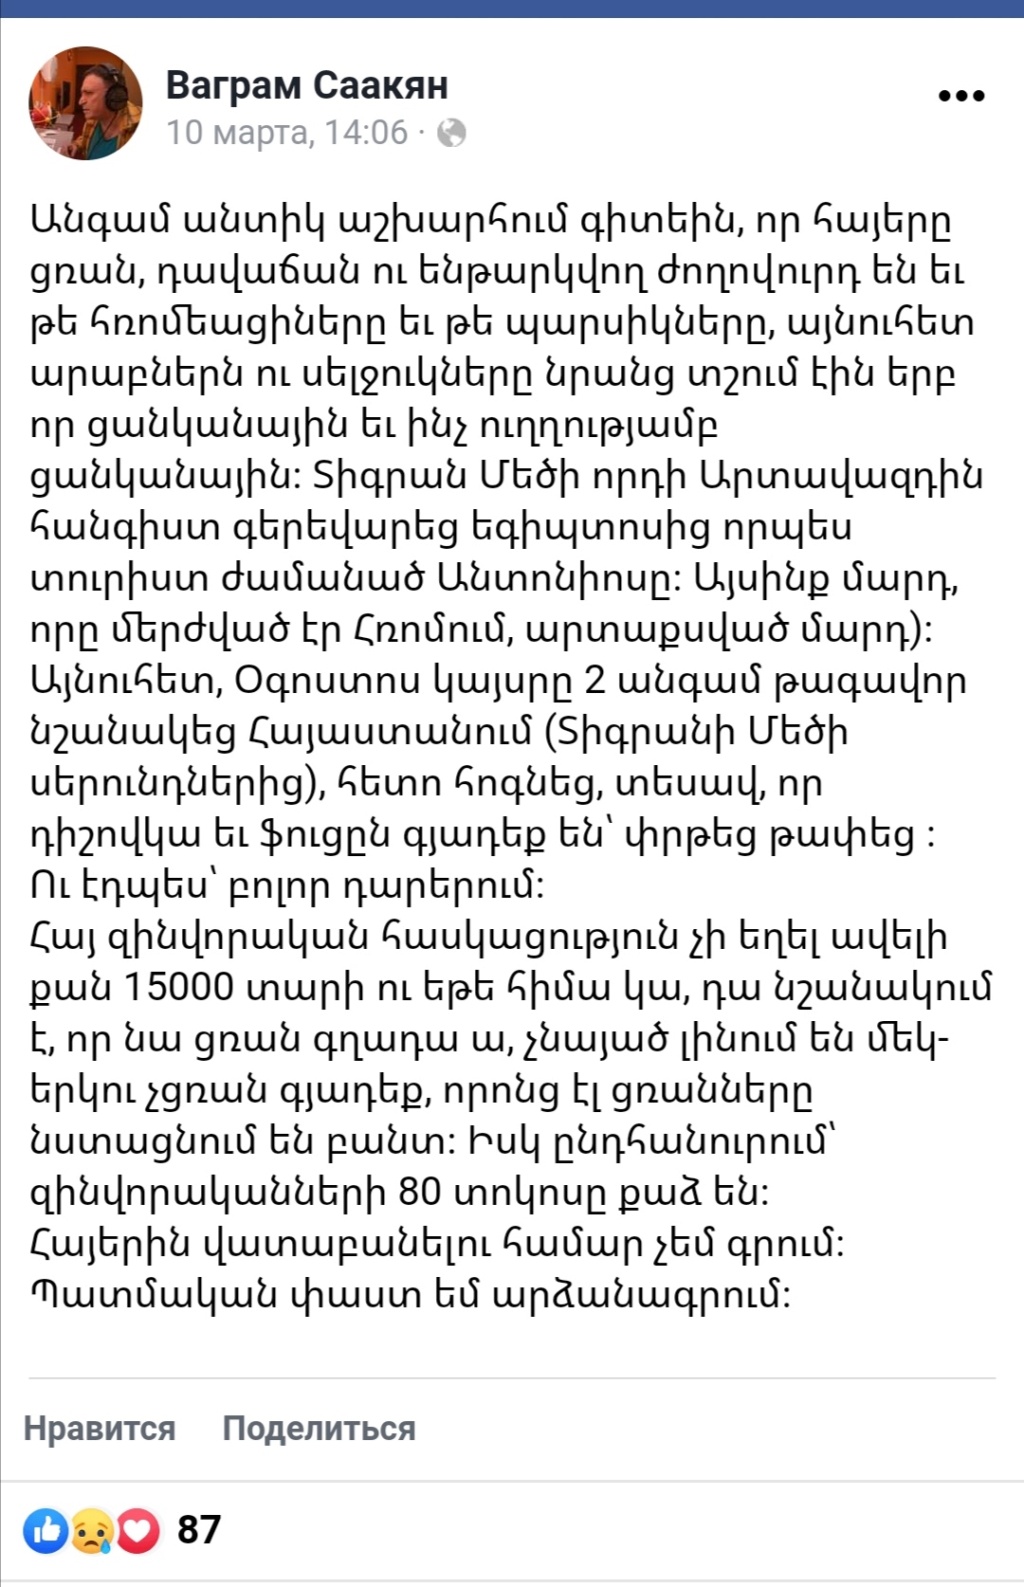 Իրավիճակը Հայաստանում | Ситуация в Армении - Page 11 Screen40